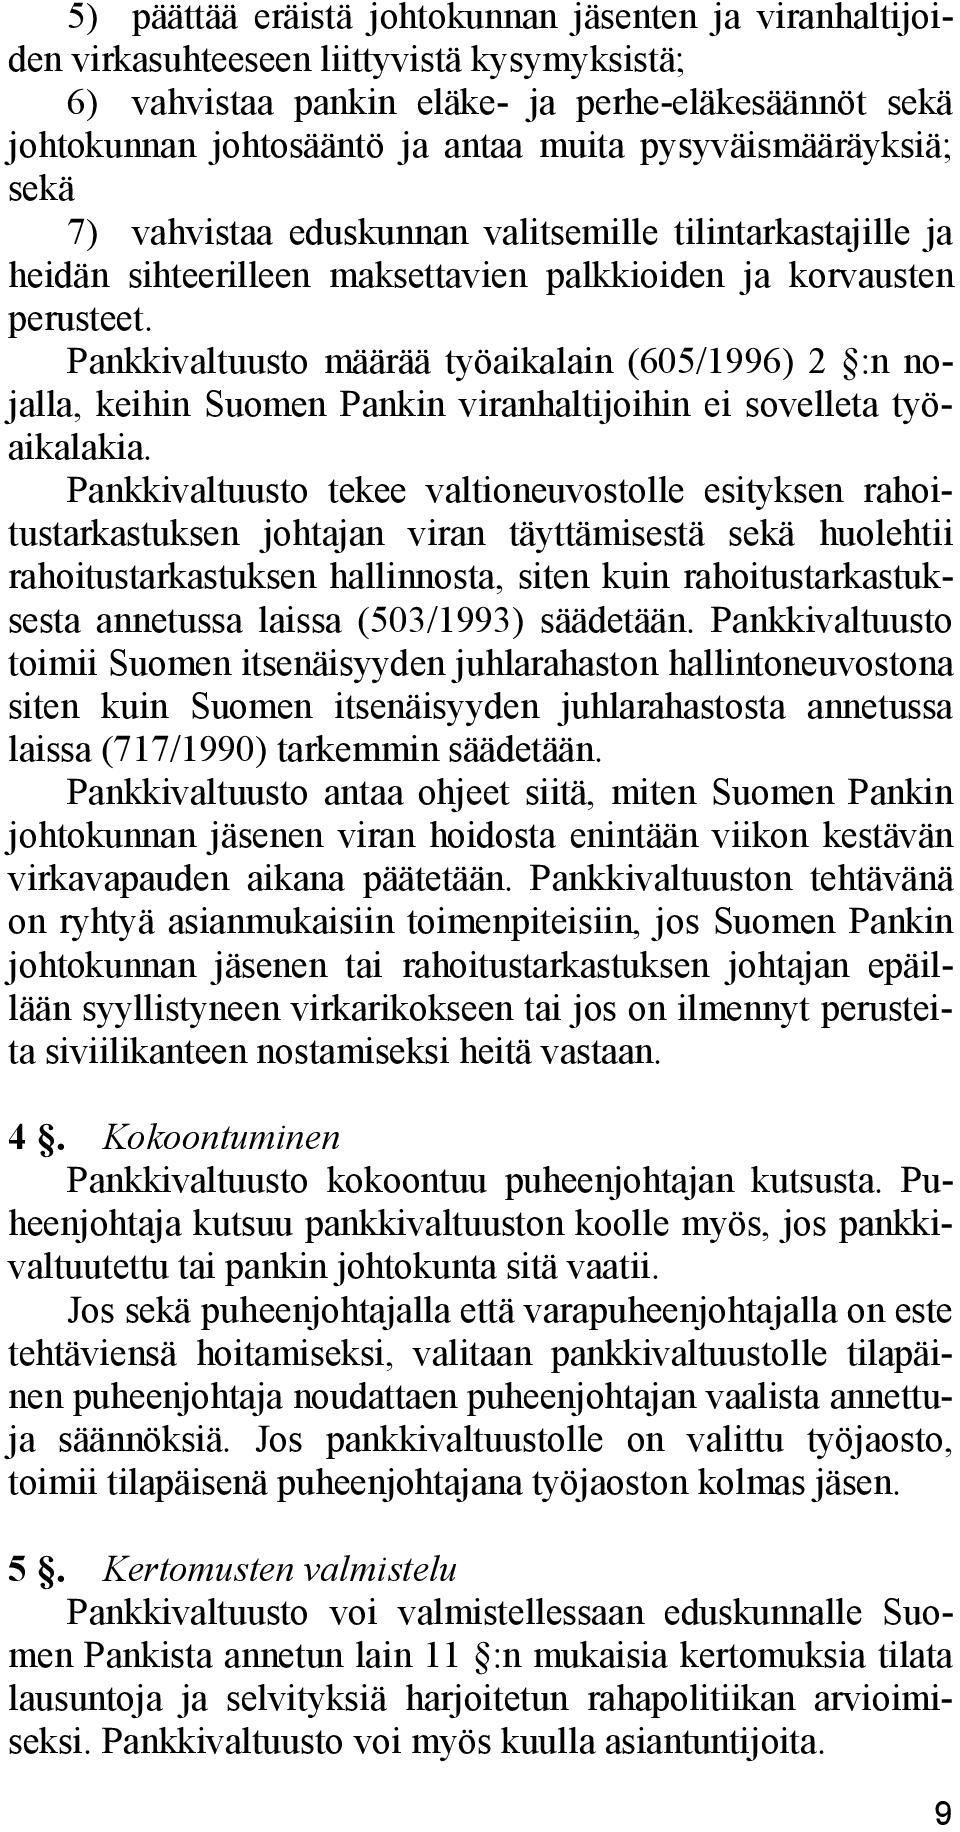 Pankkivaltuusto määrää työaikalain (605/1996) 2 :n nojalla, keihin Suomen Pankin viranhaltijoihin ei sovelleta työaikalakia.